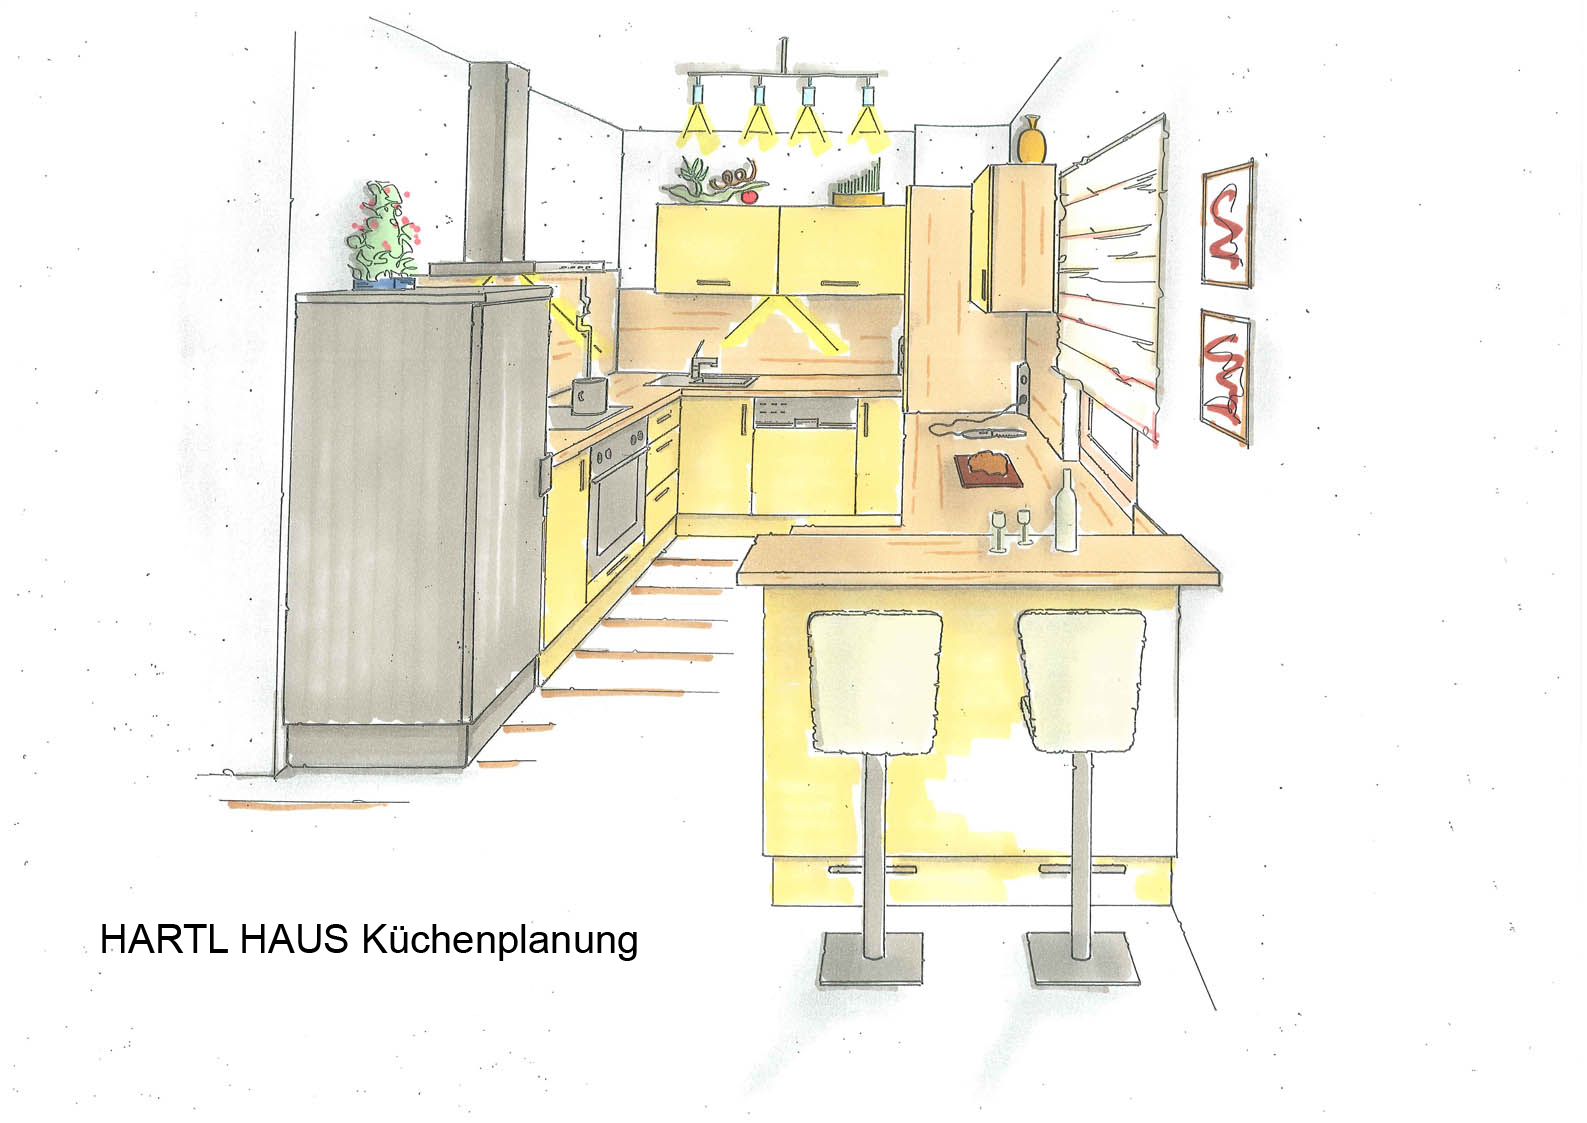 Trend 124 - HARTL HAUS Küchenplanung